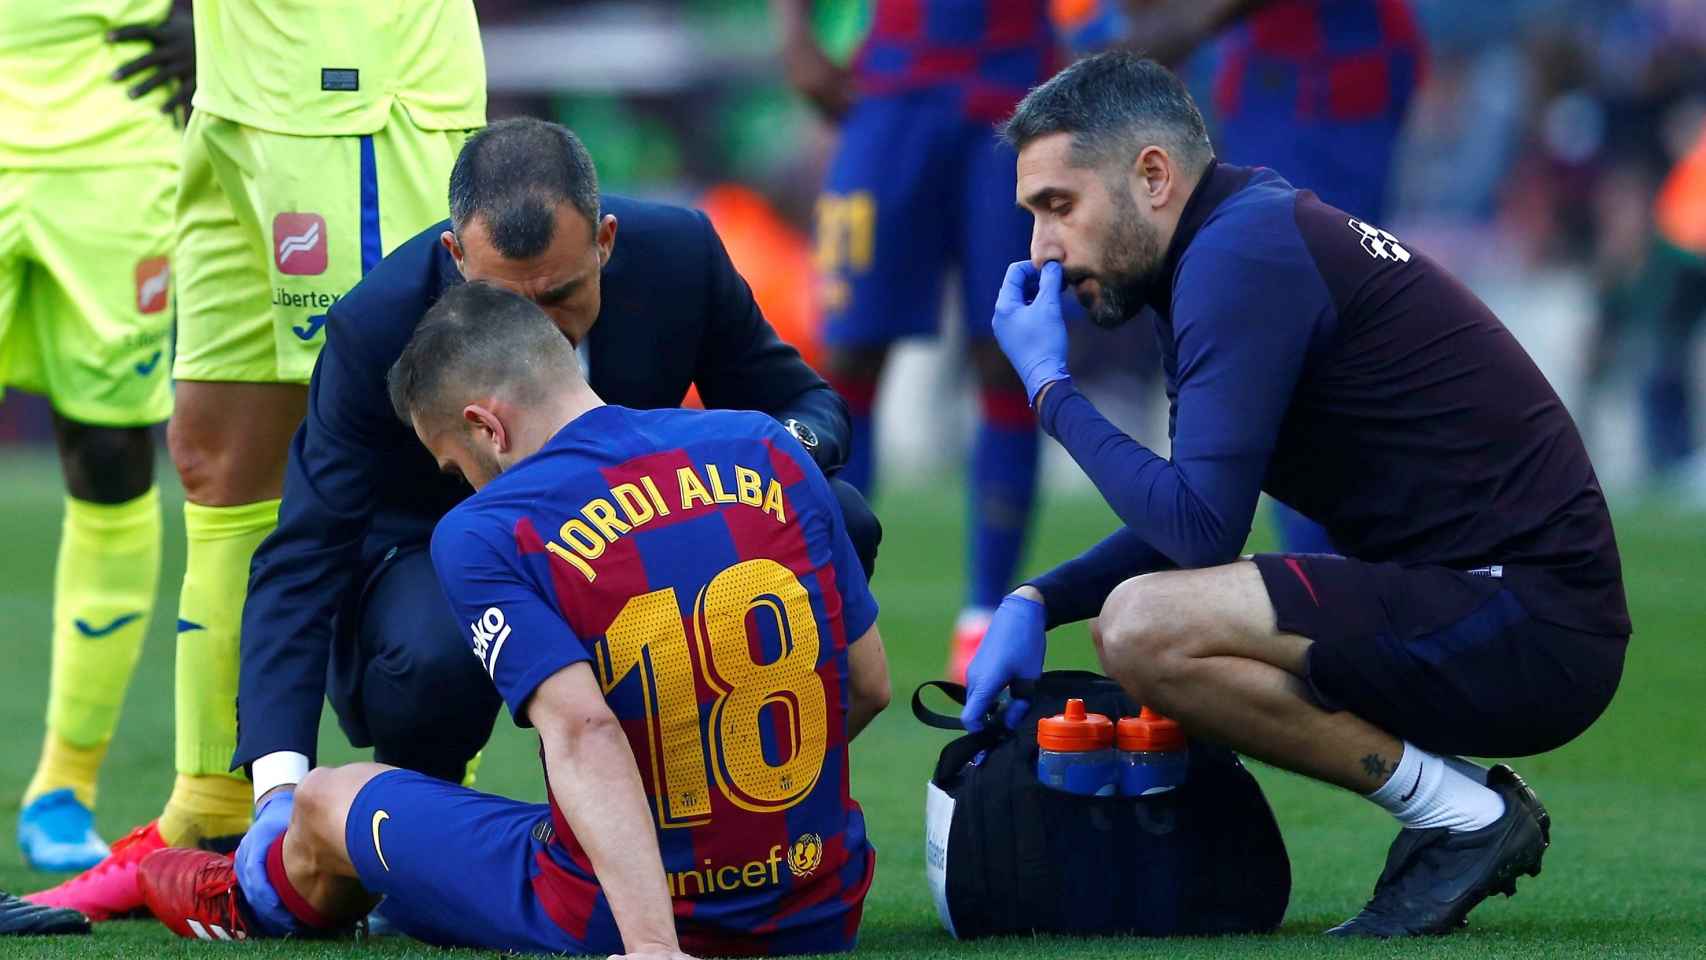 Jordi Alba siendo atendido por los servicios médicos / EFE